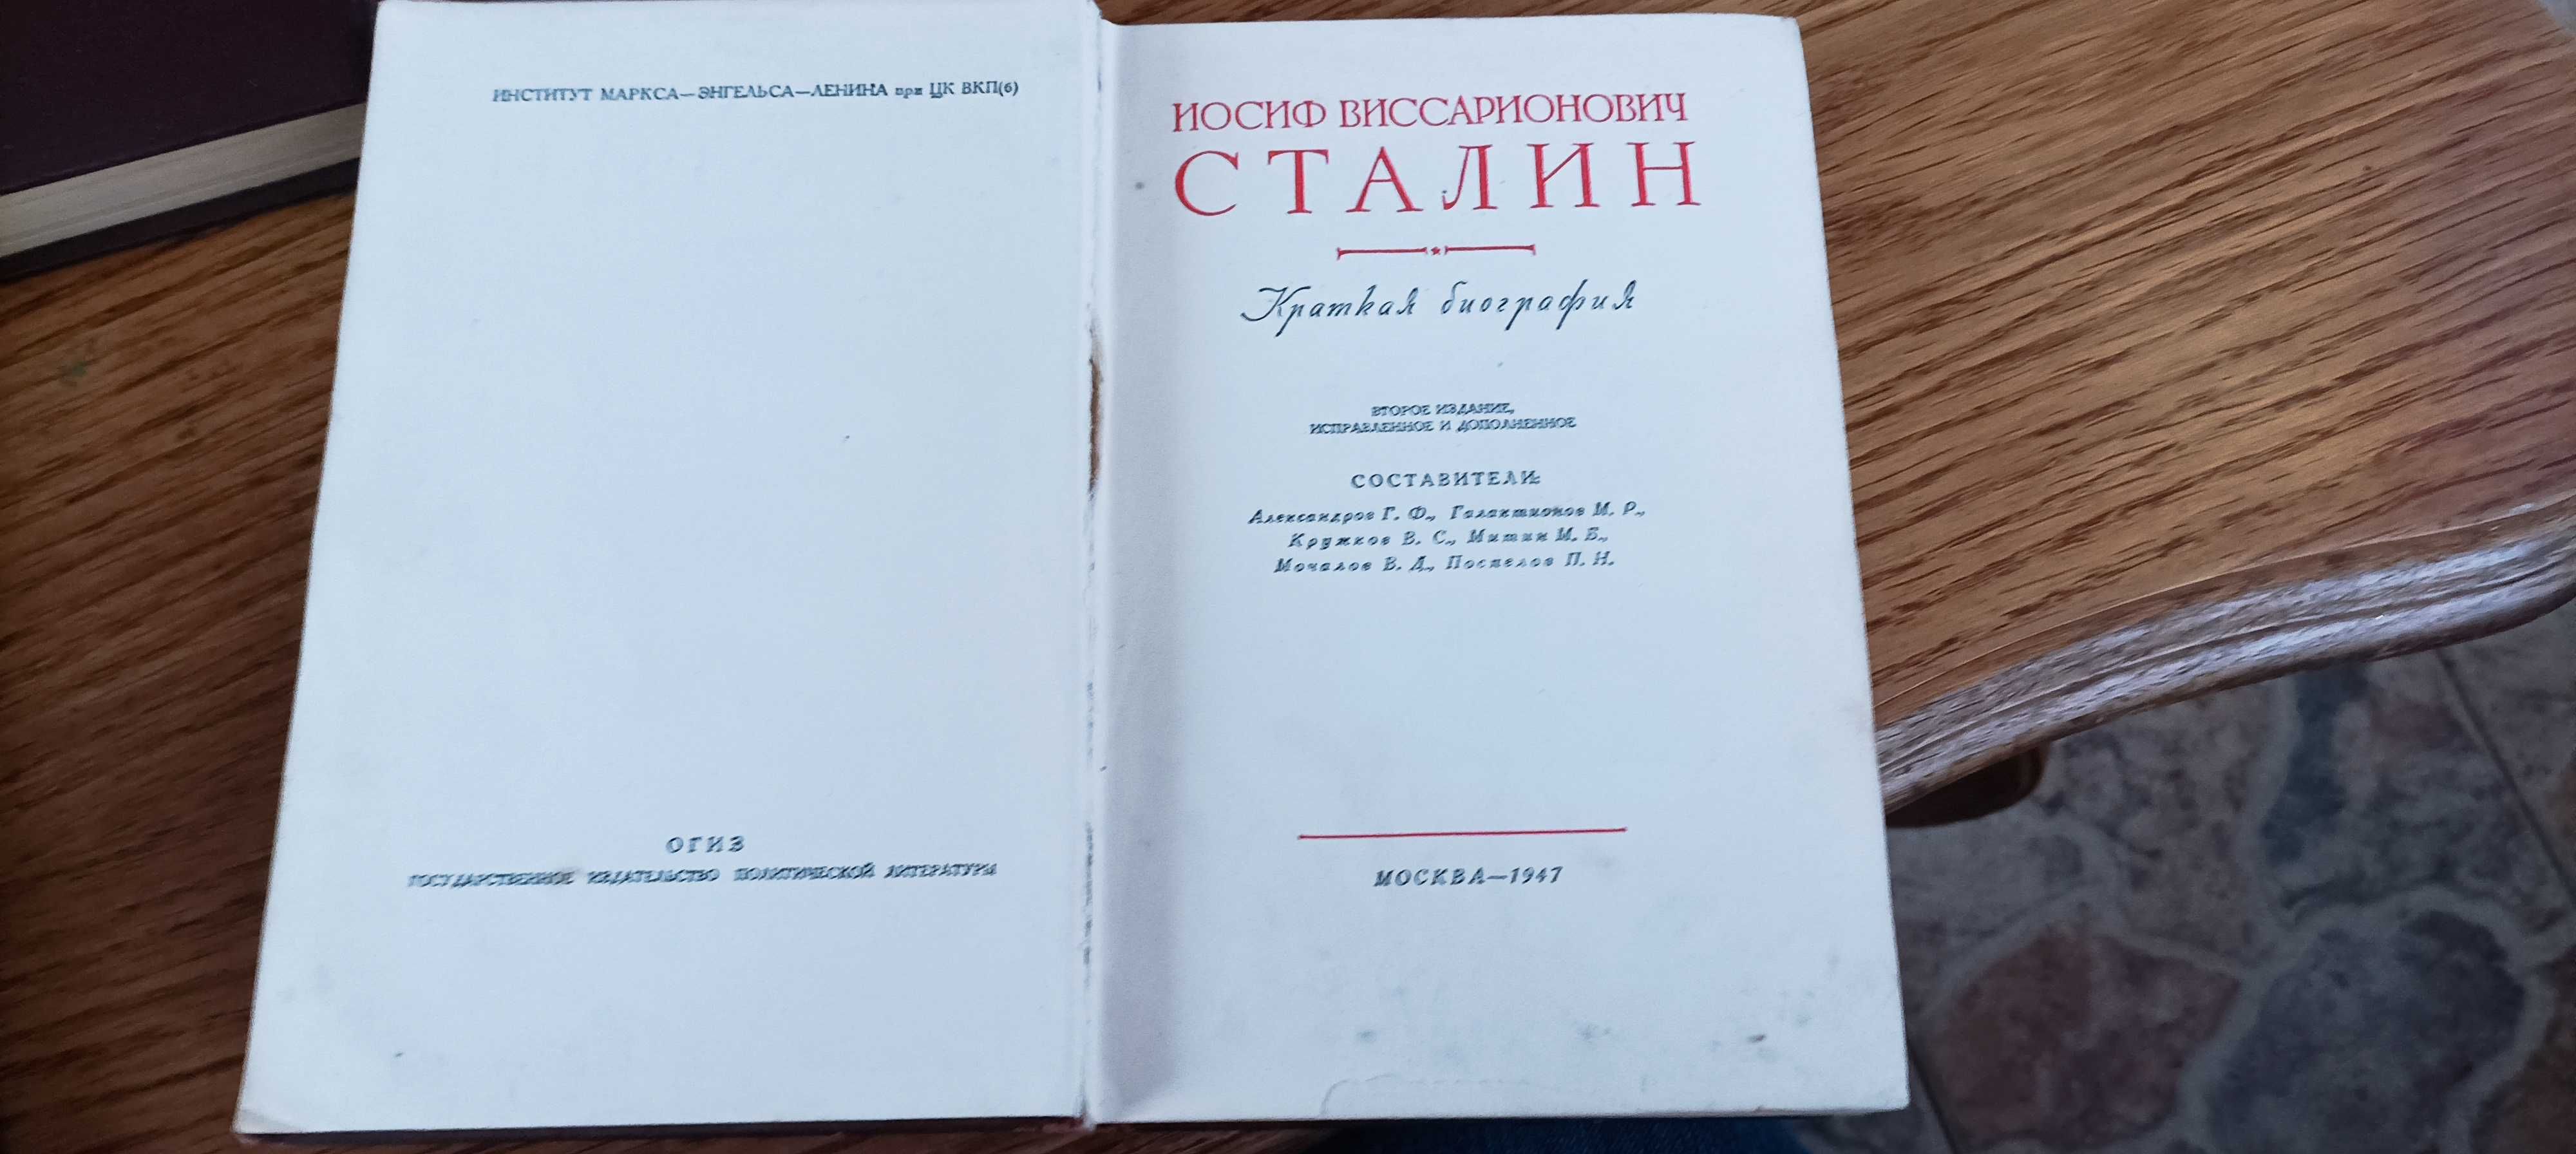 Сталин И. В. Собрание сочинений в 13 томах + краткая биография